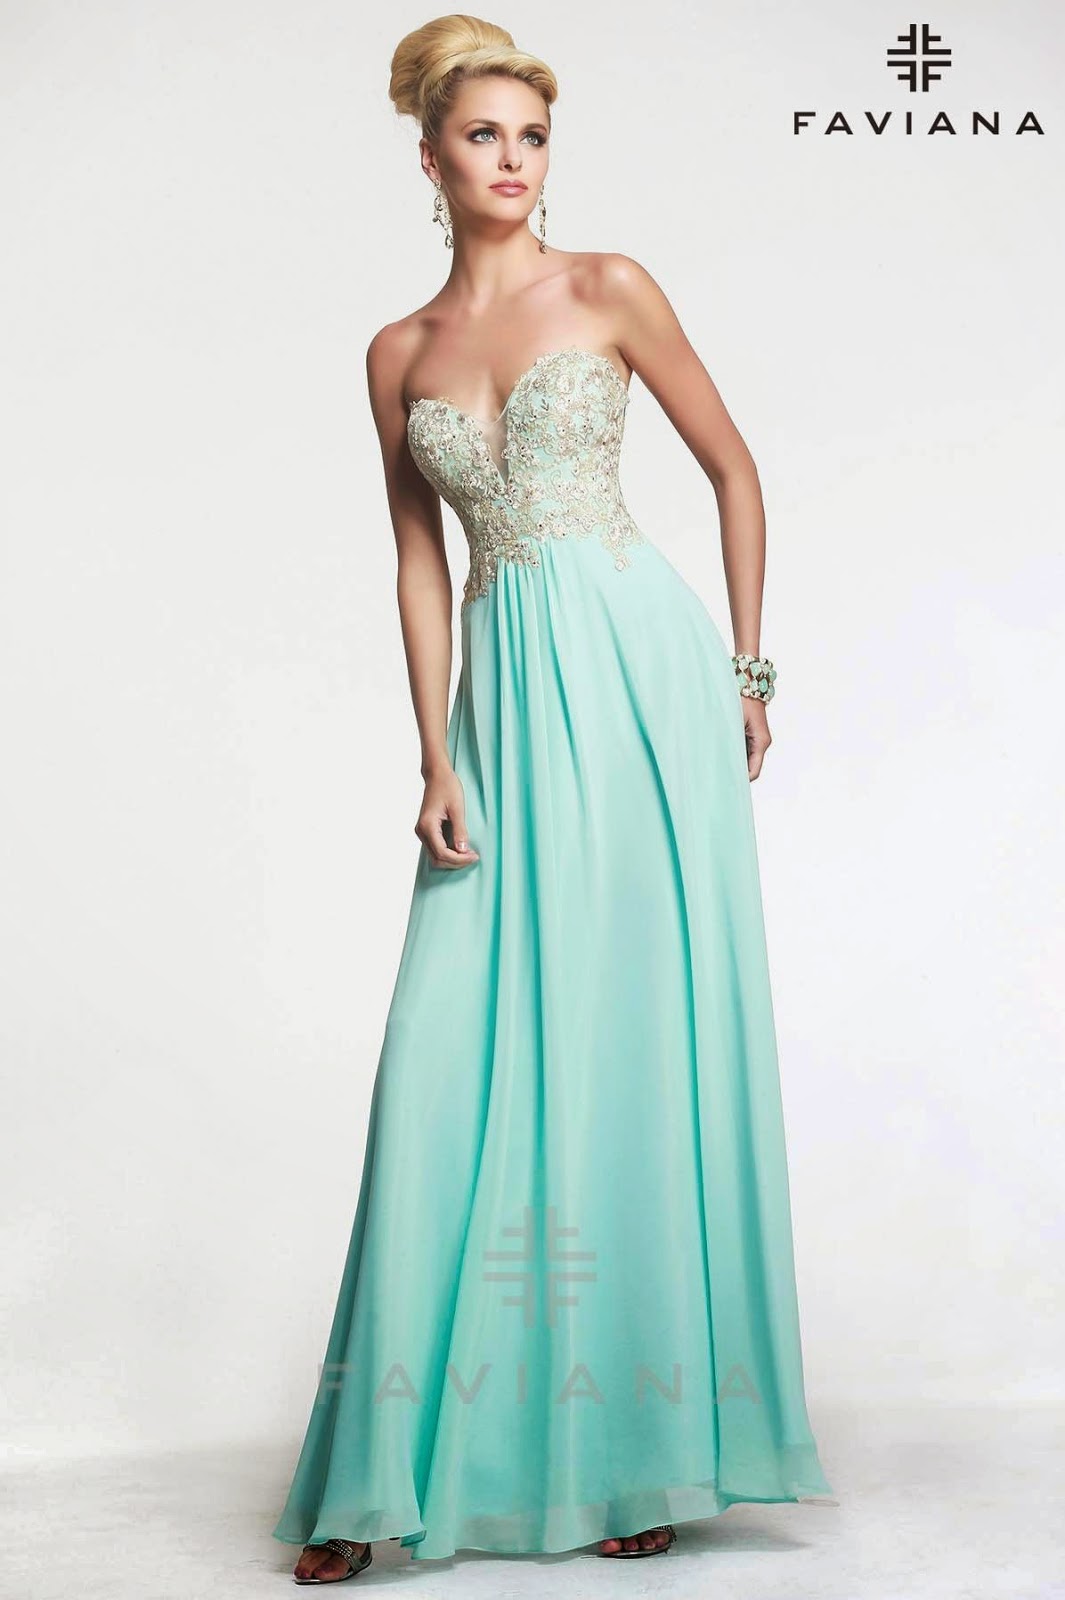 http://www.faviana.com/catalog/dress-s7325?category=prom-2015